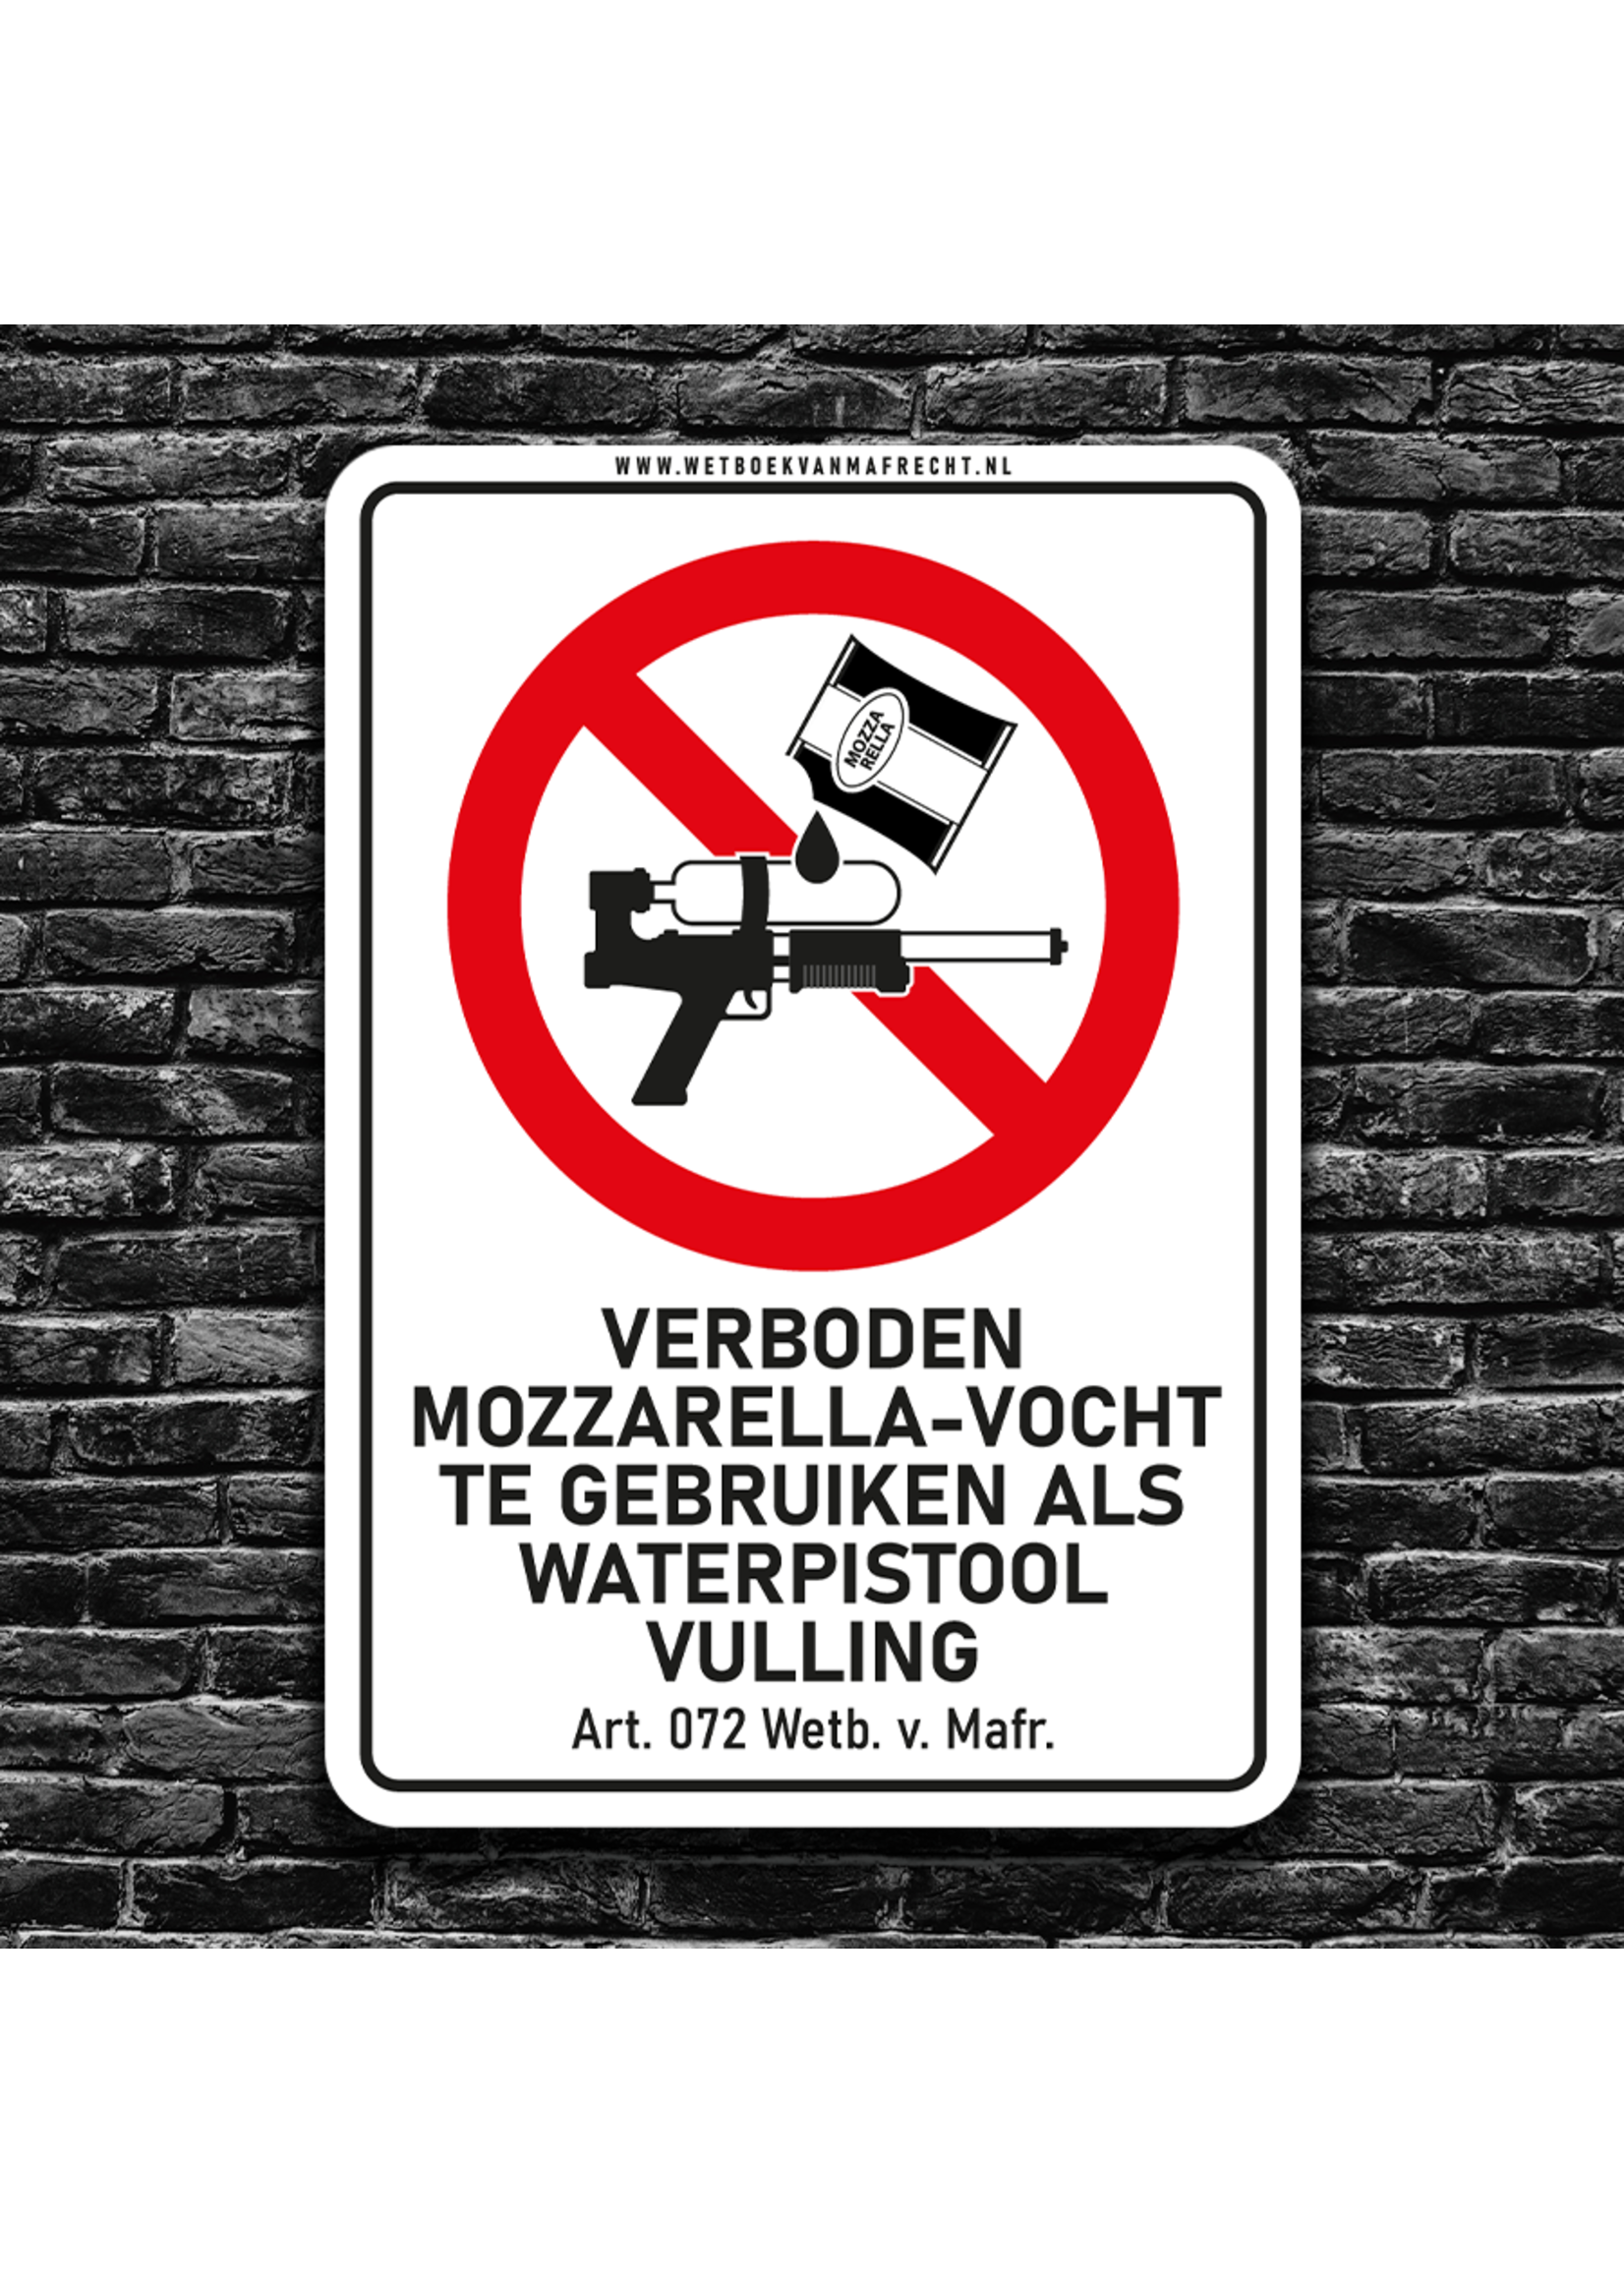 Wetboek van Mafrecht Artikel 072 - VERBODEN MOZZARELLA-VOCHT TE GEBRUIKEN ALS WATERPISTOOL VULLING